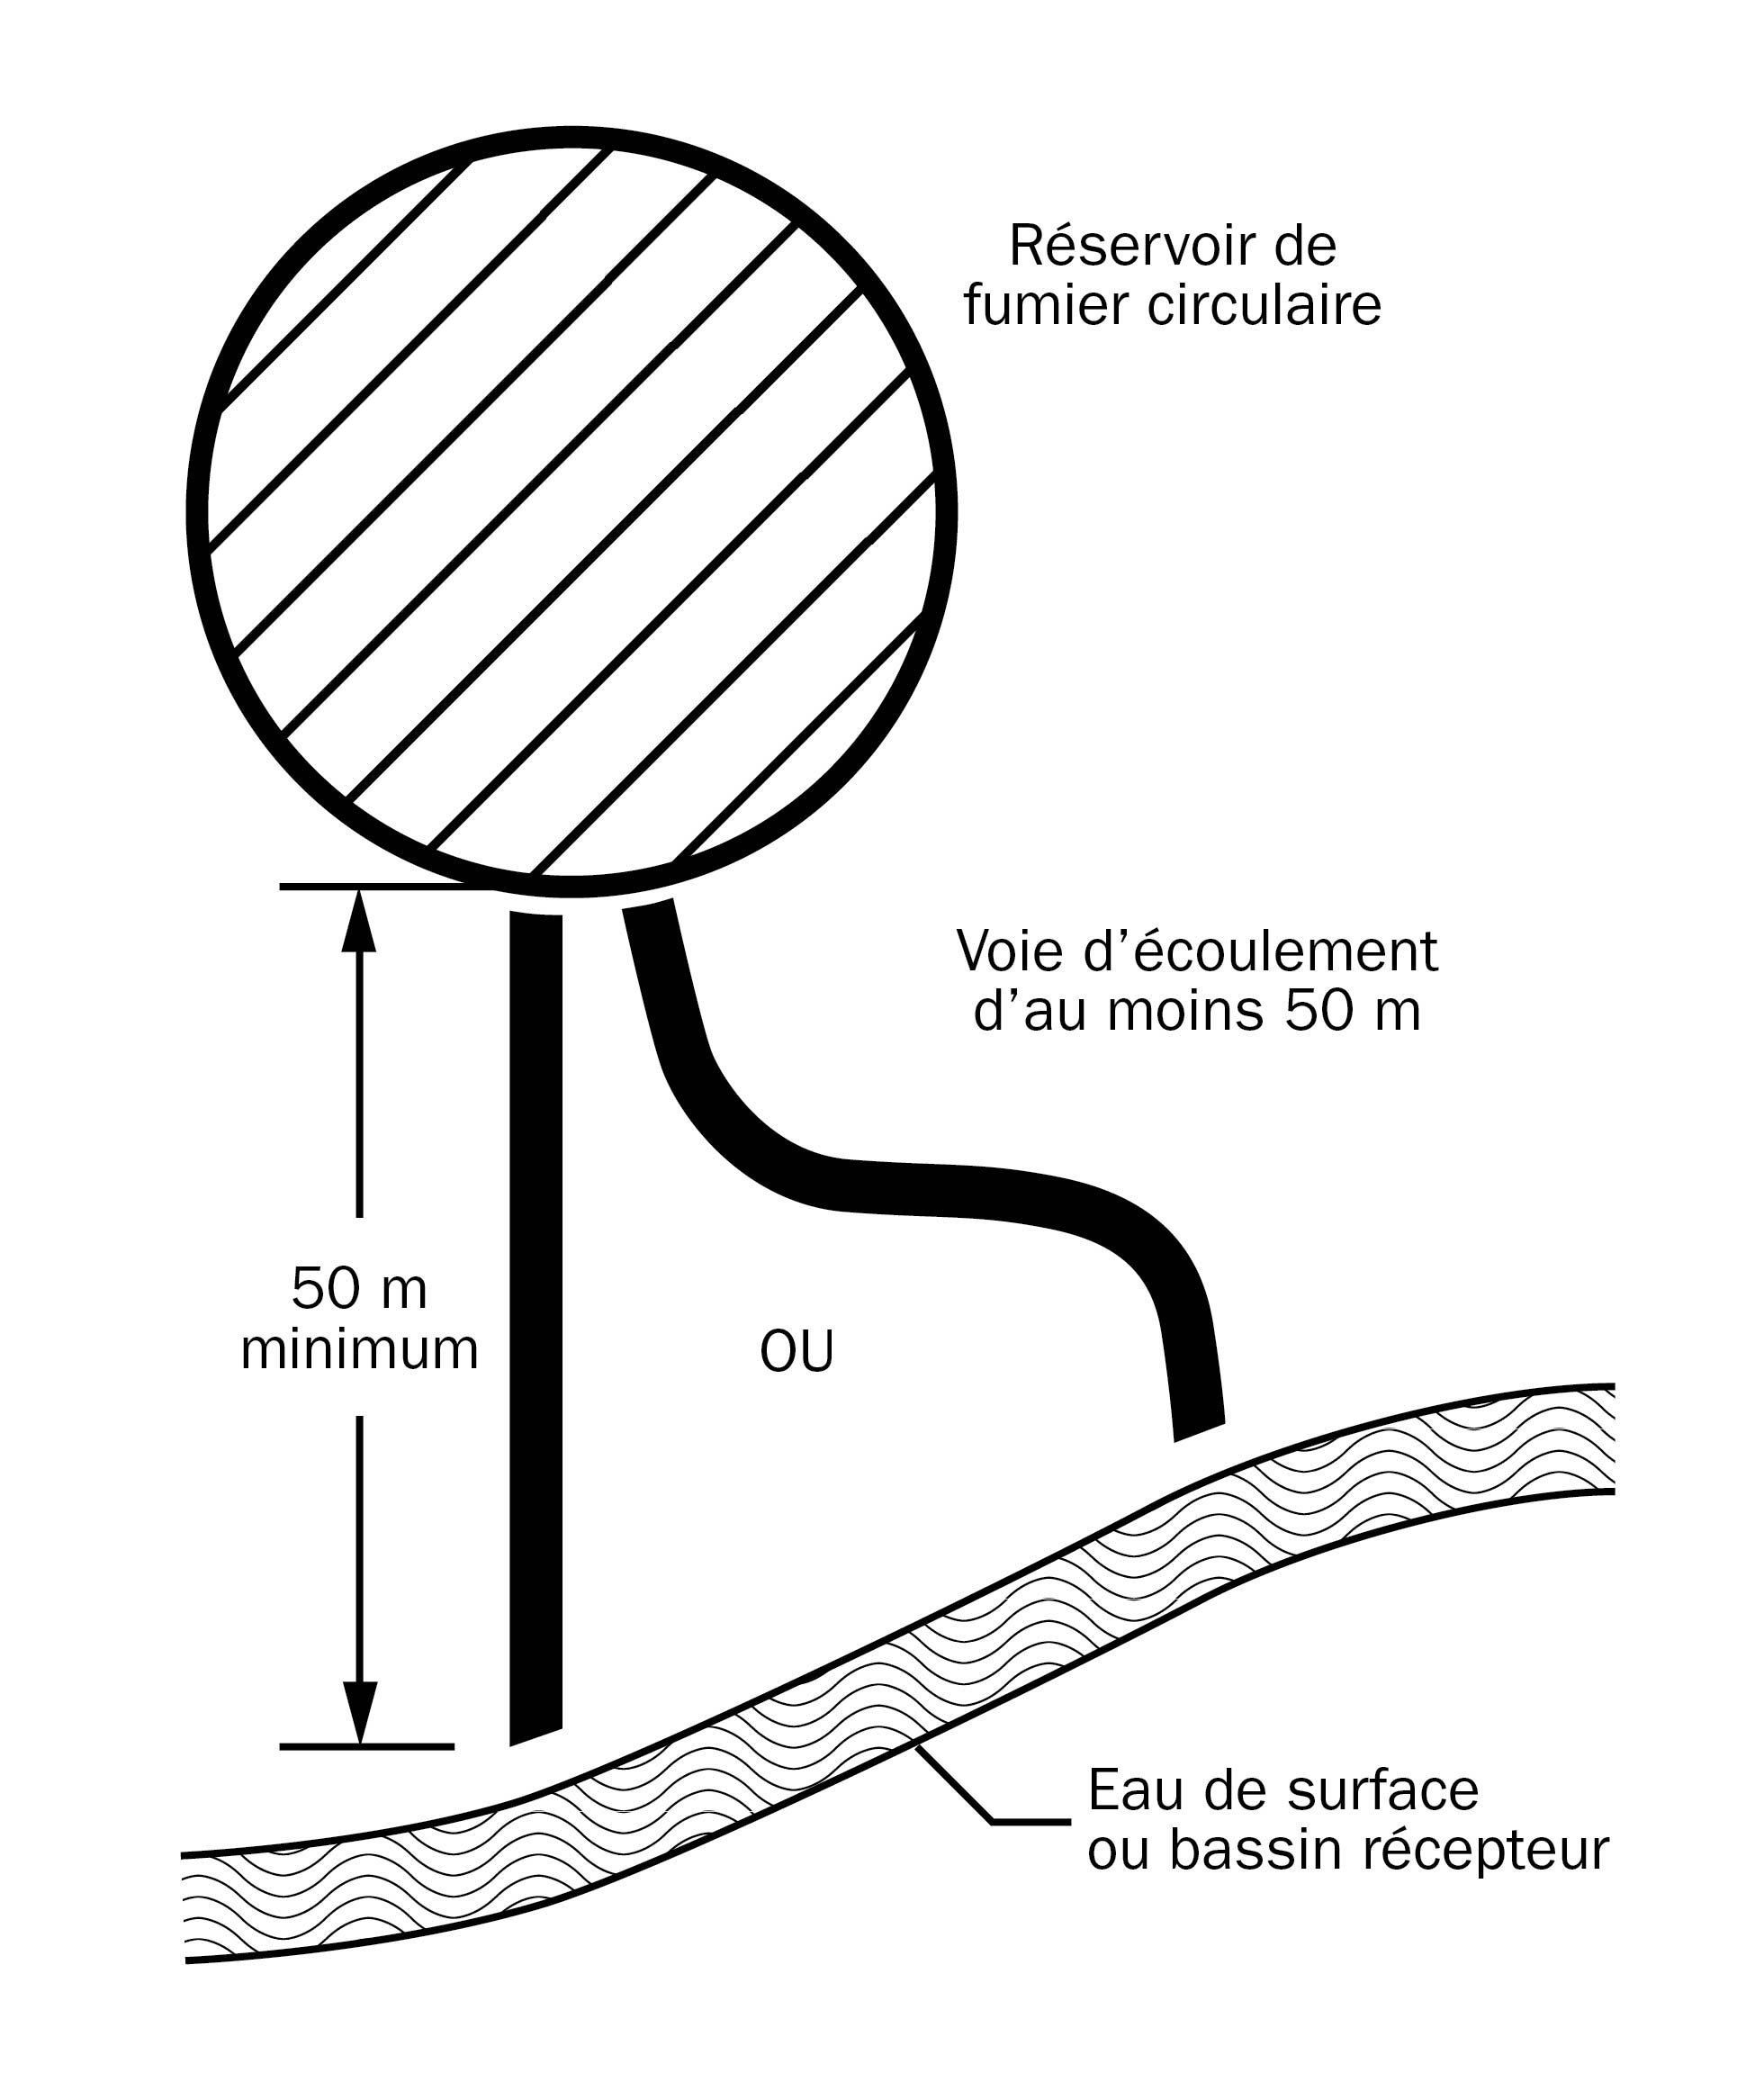 Dessin montrant une grande structure d’entreposage de fumier circulaire dans le coin nord, à gauche, et un bassin récepteur ou avaloir de l’eau de surface à 50 m au sud du réservoir. Du réservoir à l’eau de surface, il y a une voie d’écoulement de 50 mètres. Le dessin montre que la voie d’écoulement entre le réservoir et l’eau de surface ne suit pas toujours une ligne droite, et qu’il est important de prévoir une distance suffisante pour maîtriser l’écoulement en cas de déversement.